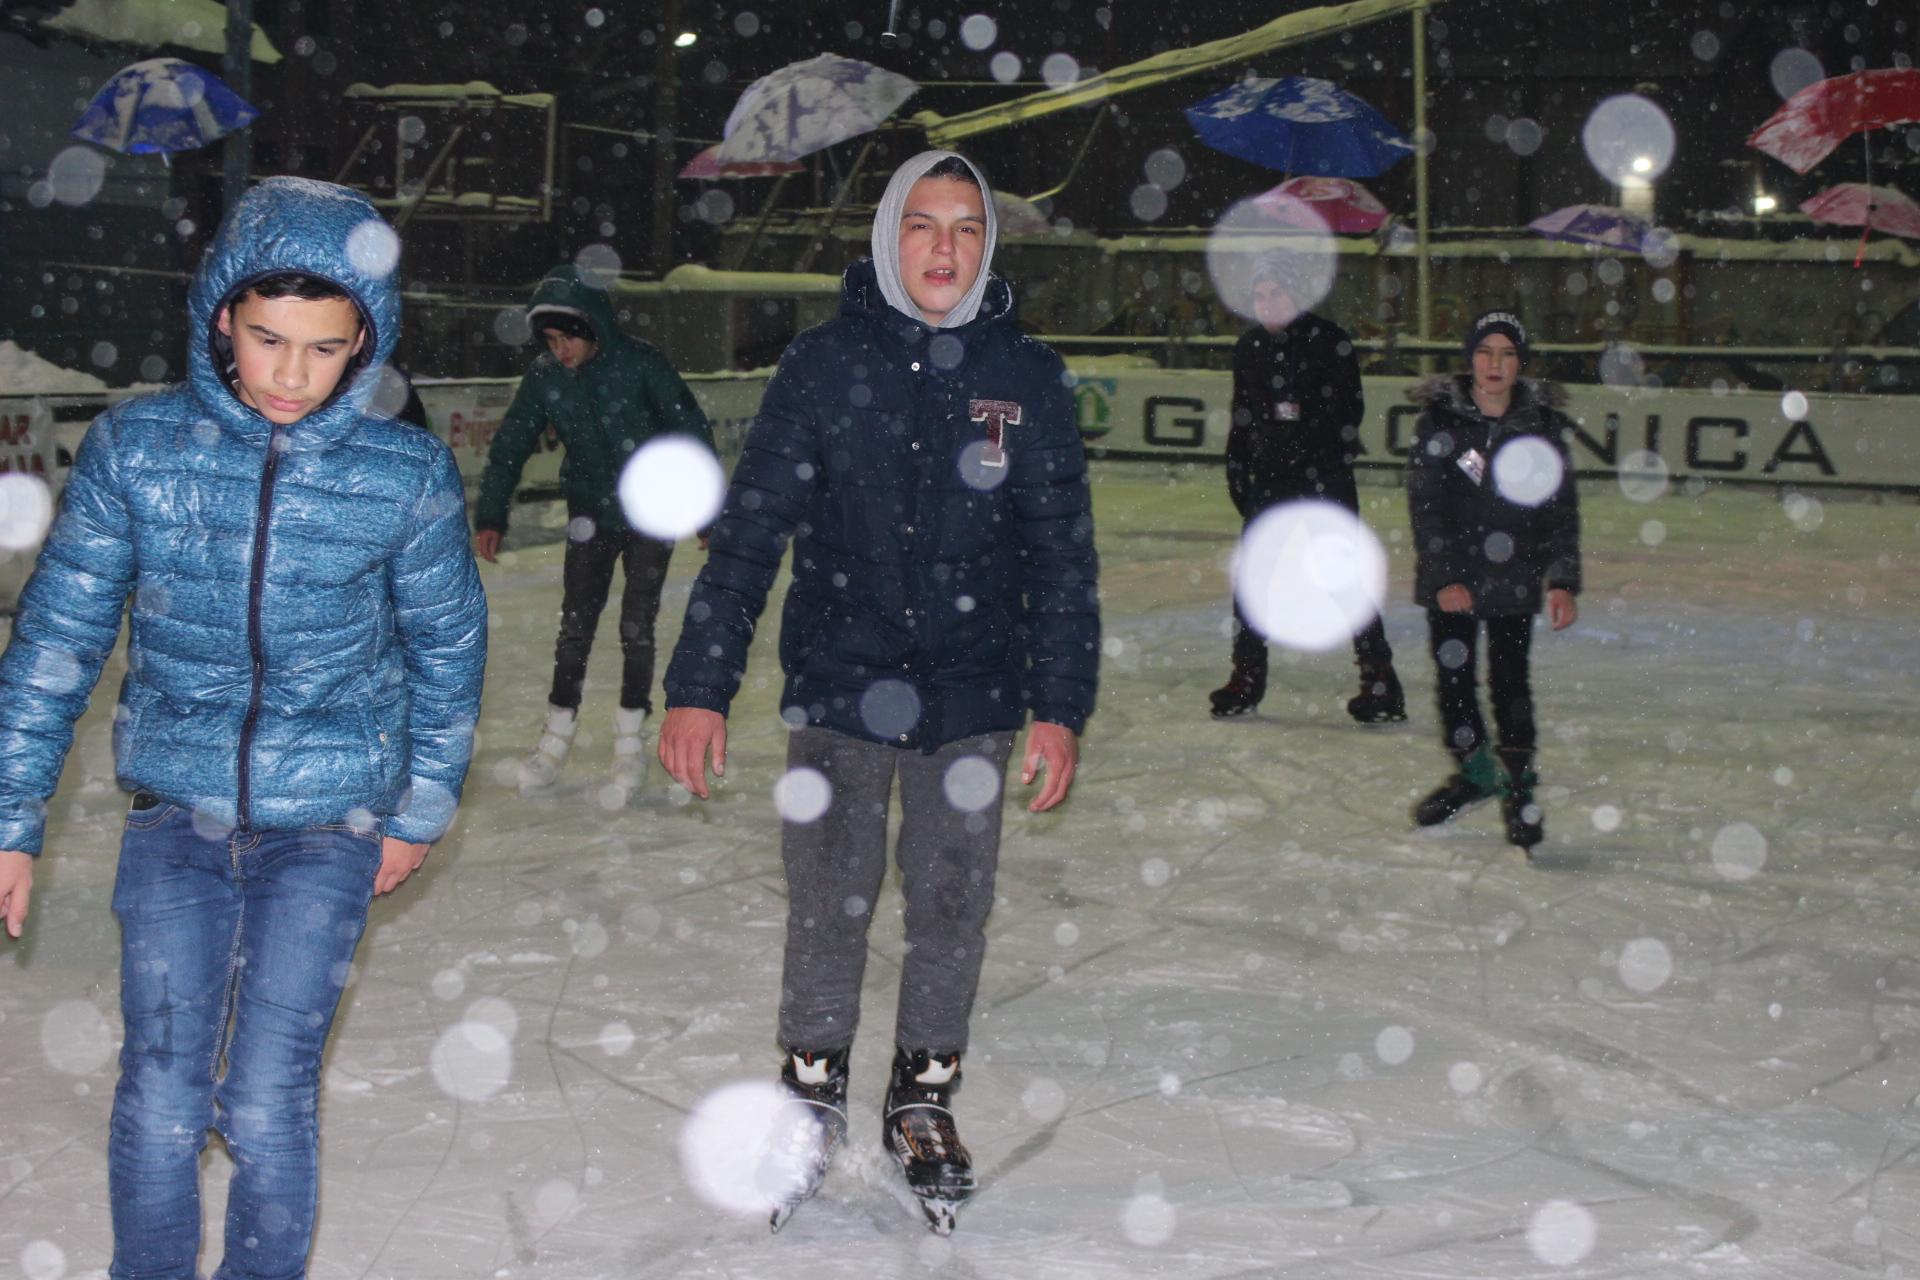 Uz minuse i gust, suh snijeg, djeca uživaju na klizalištu - Avaz